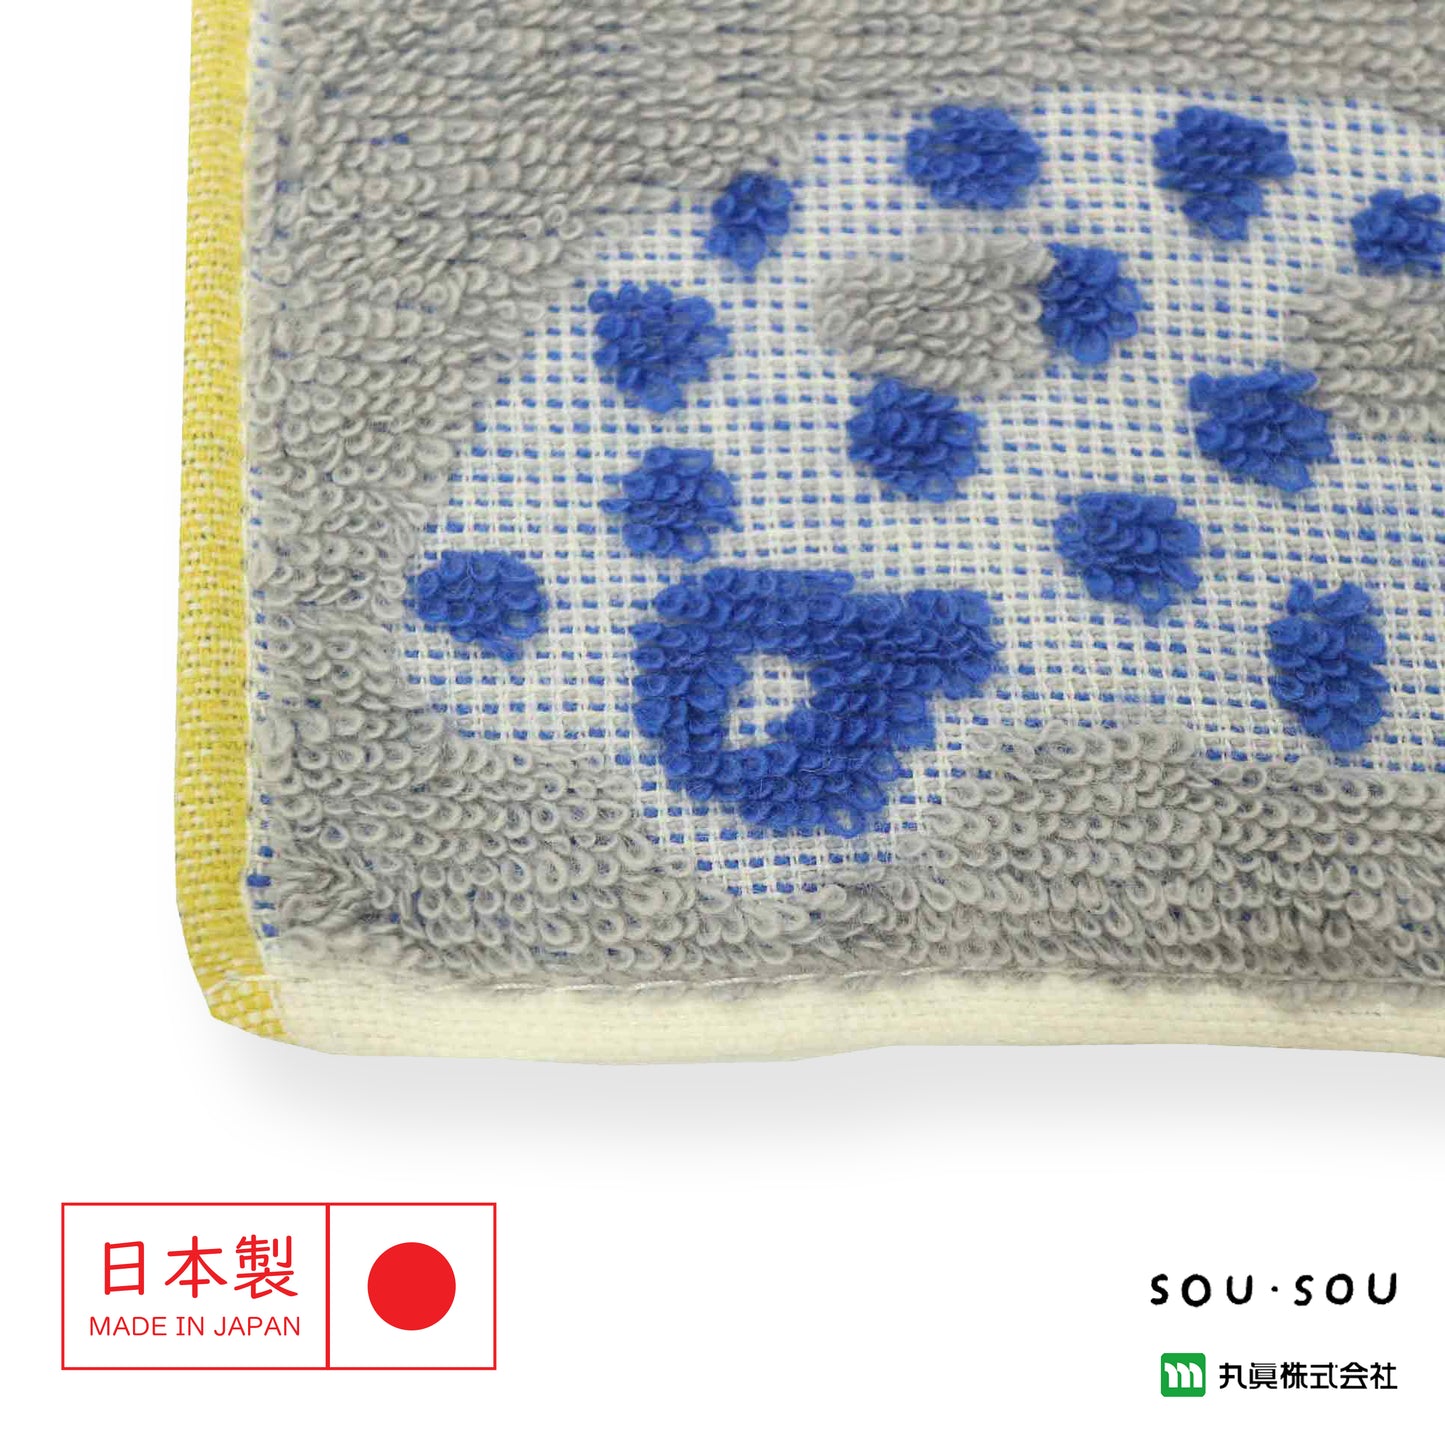 SOU・SOU Mame Cotton Towel